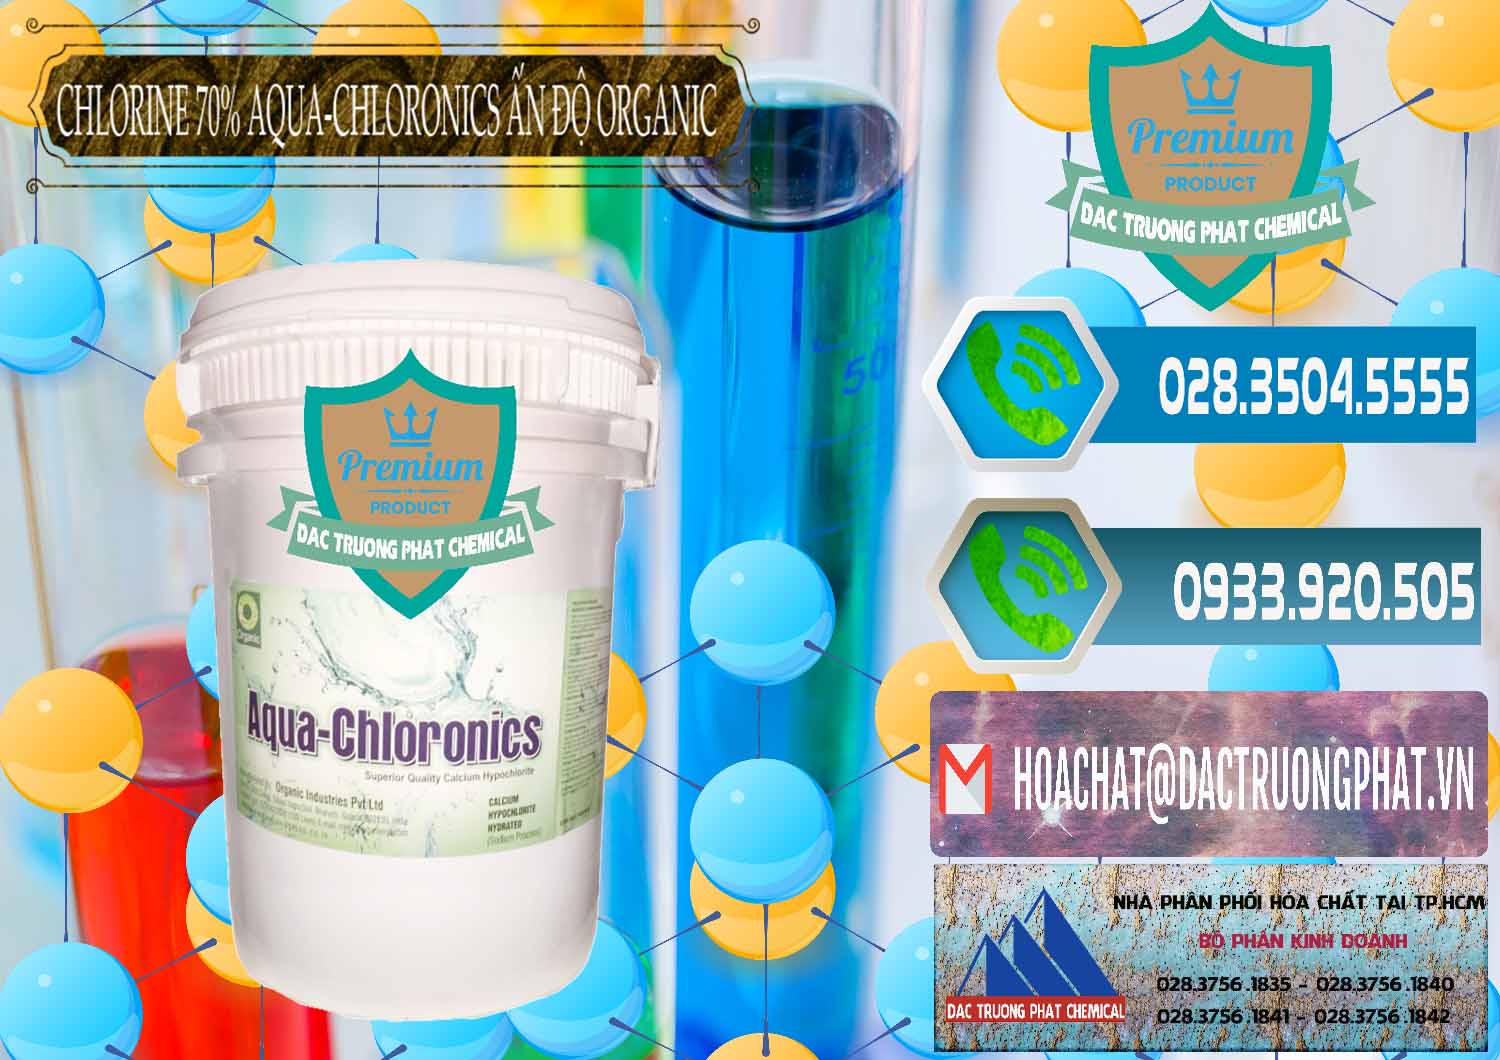 Nơi chuyên phân phối ( bán ) Chlorine – Clorin 70% Aqua-Chloronics Ấn Độ Organic India - 0211 - Chuyên phân phối - nhập khẩu hóa chất tại TP.HCM - congtyhoachat.net